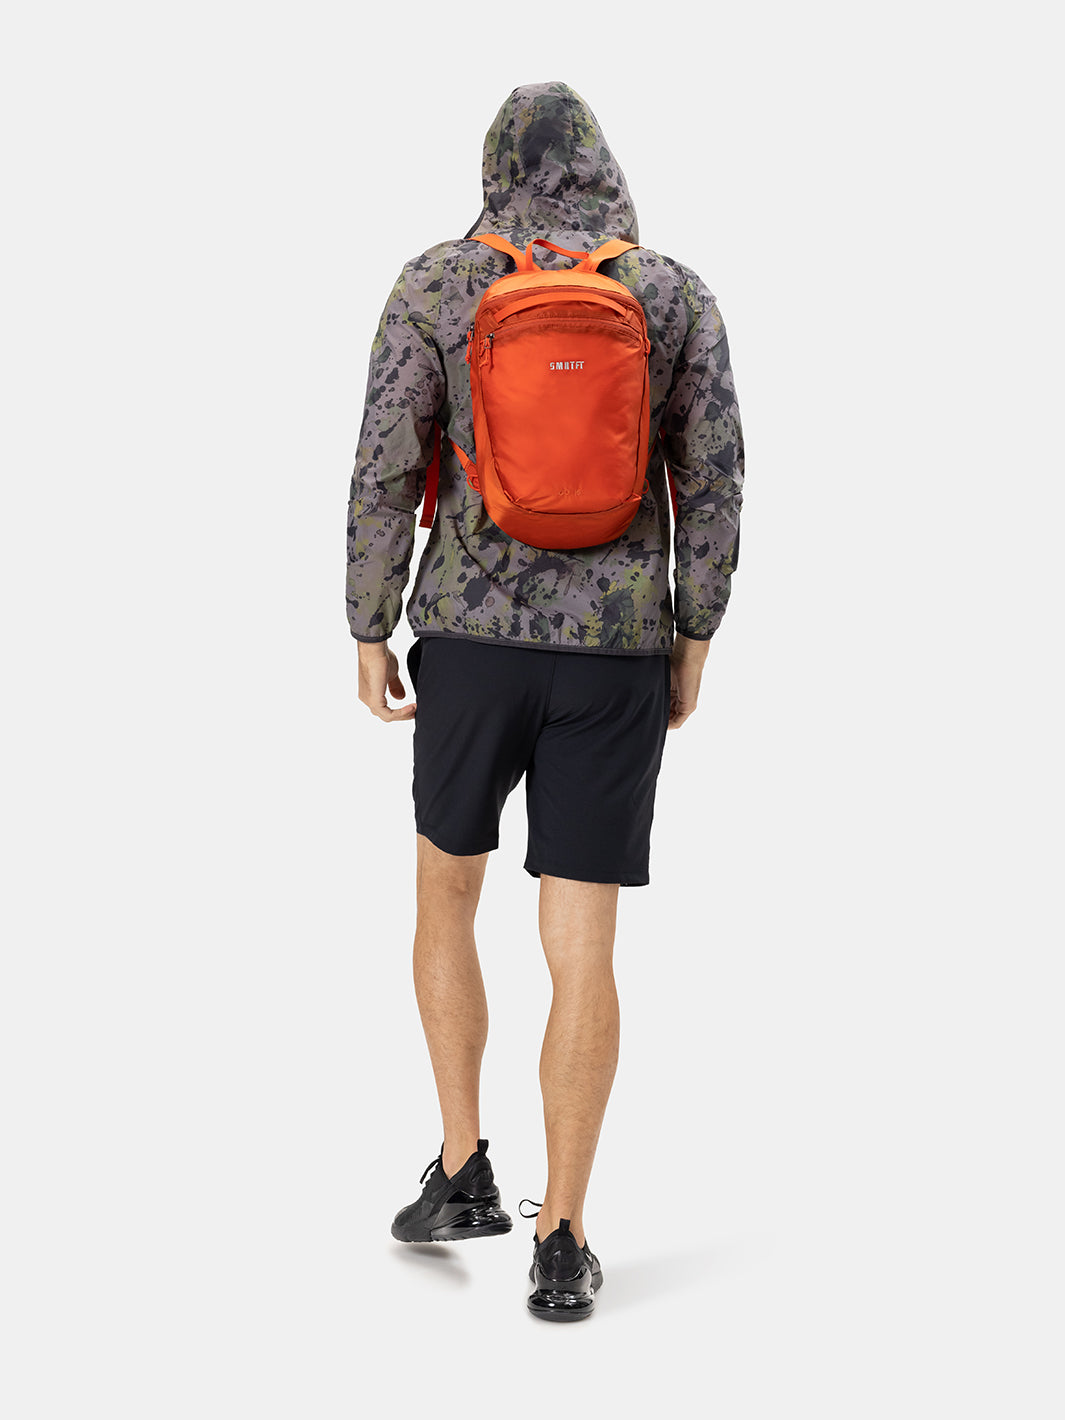 Orange Backpacks For Men | SMRTFT Backpacks | SMRTPAC GO